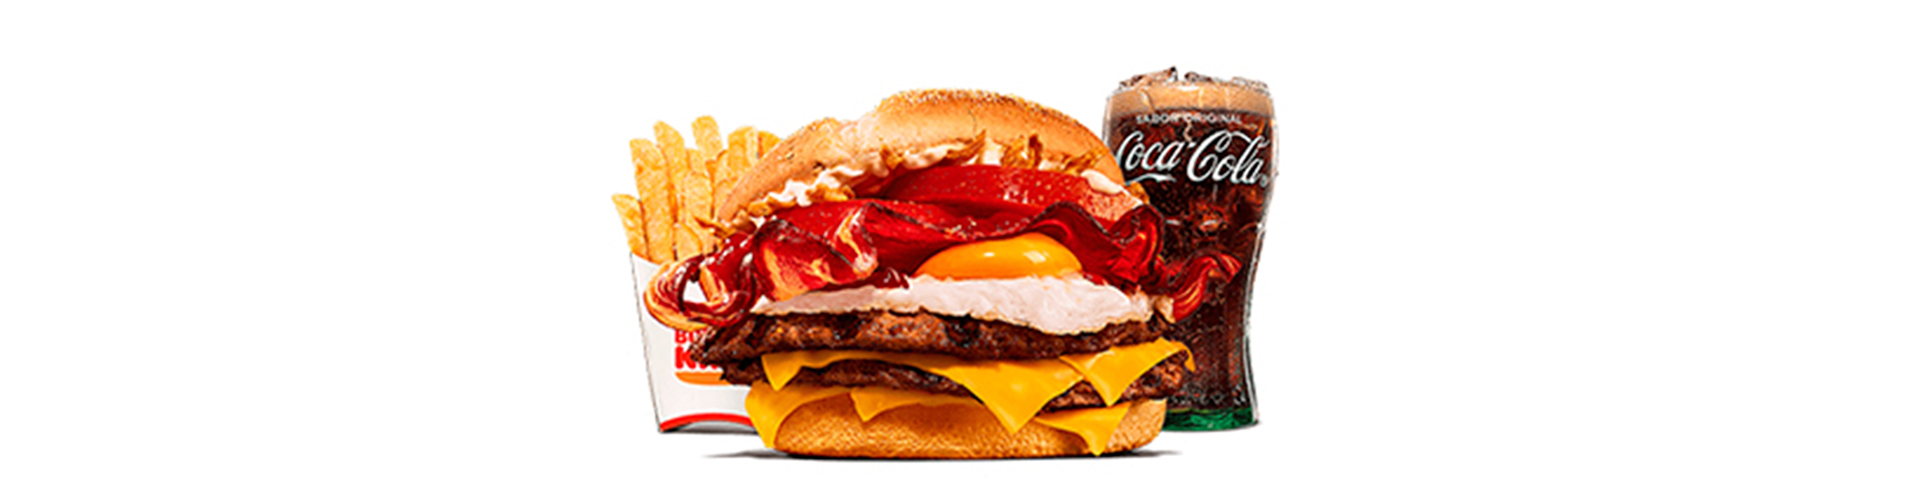 burgerking-40002126-cocacola-ensalada